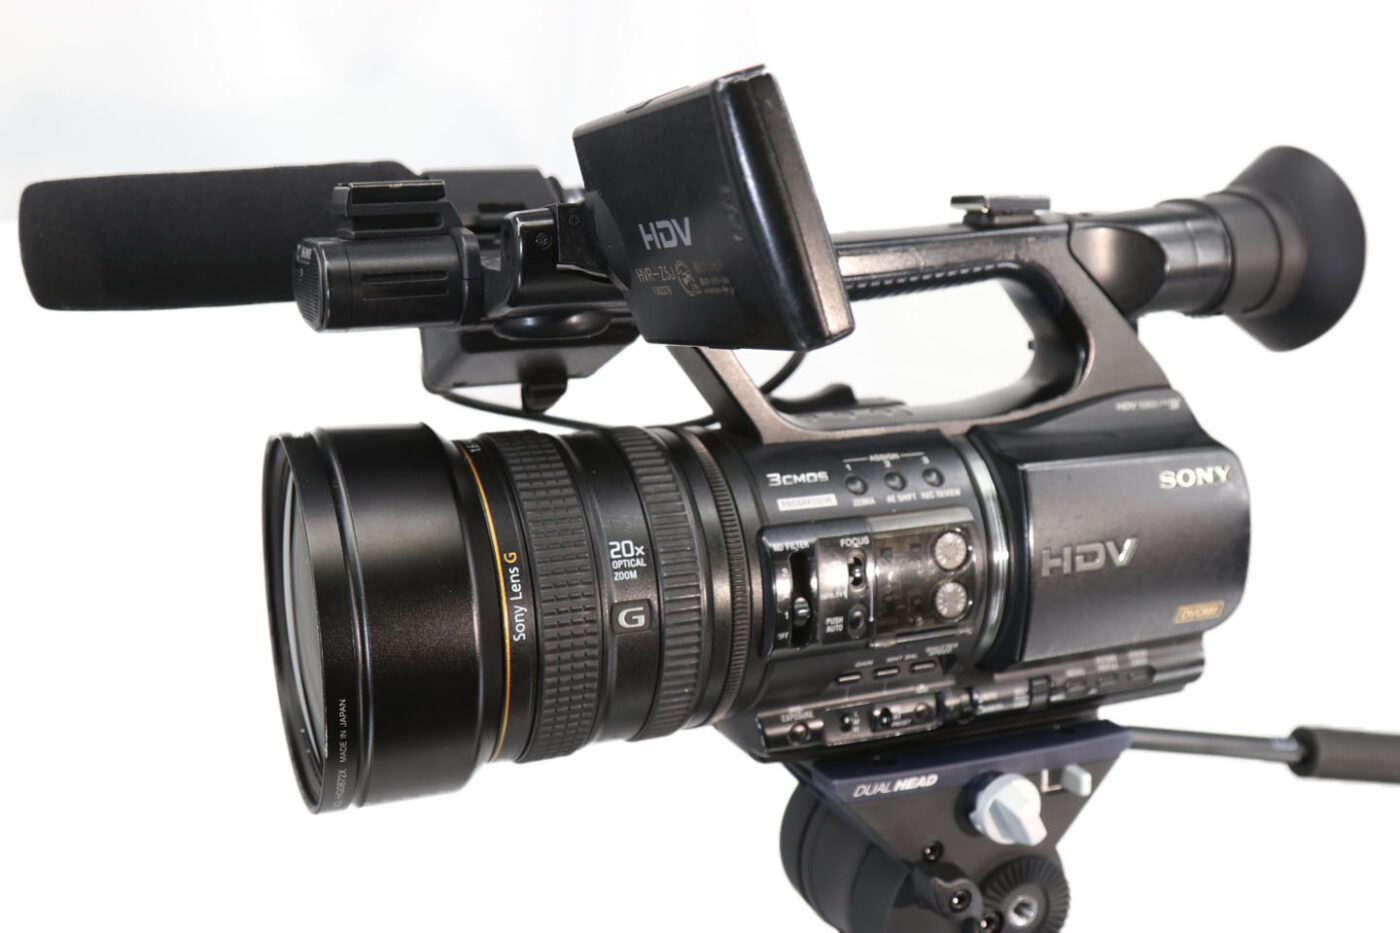 24115円 高級ブランド SONY HDV 業務用カメラ